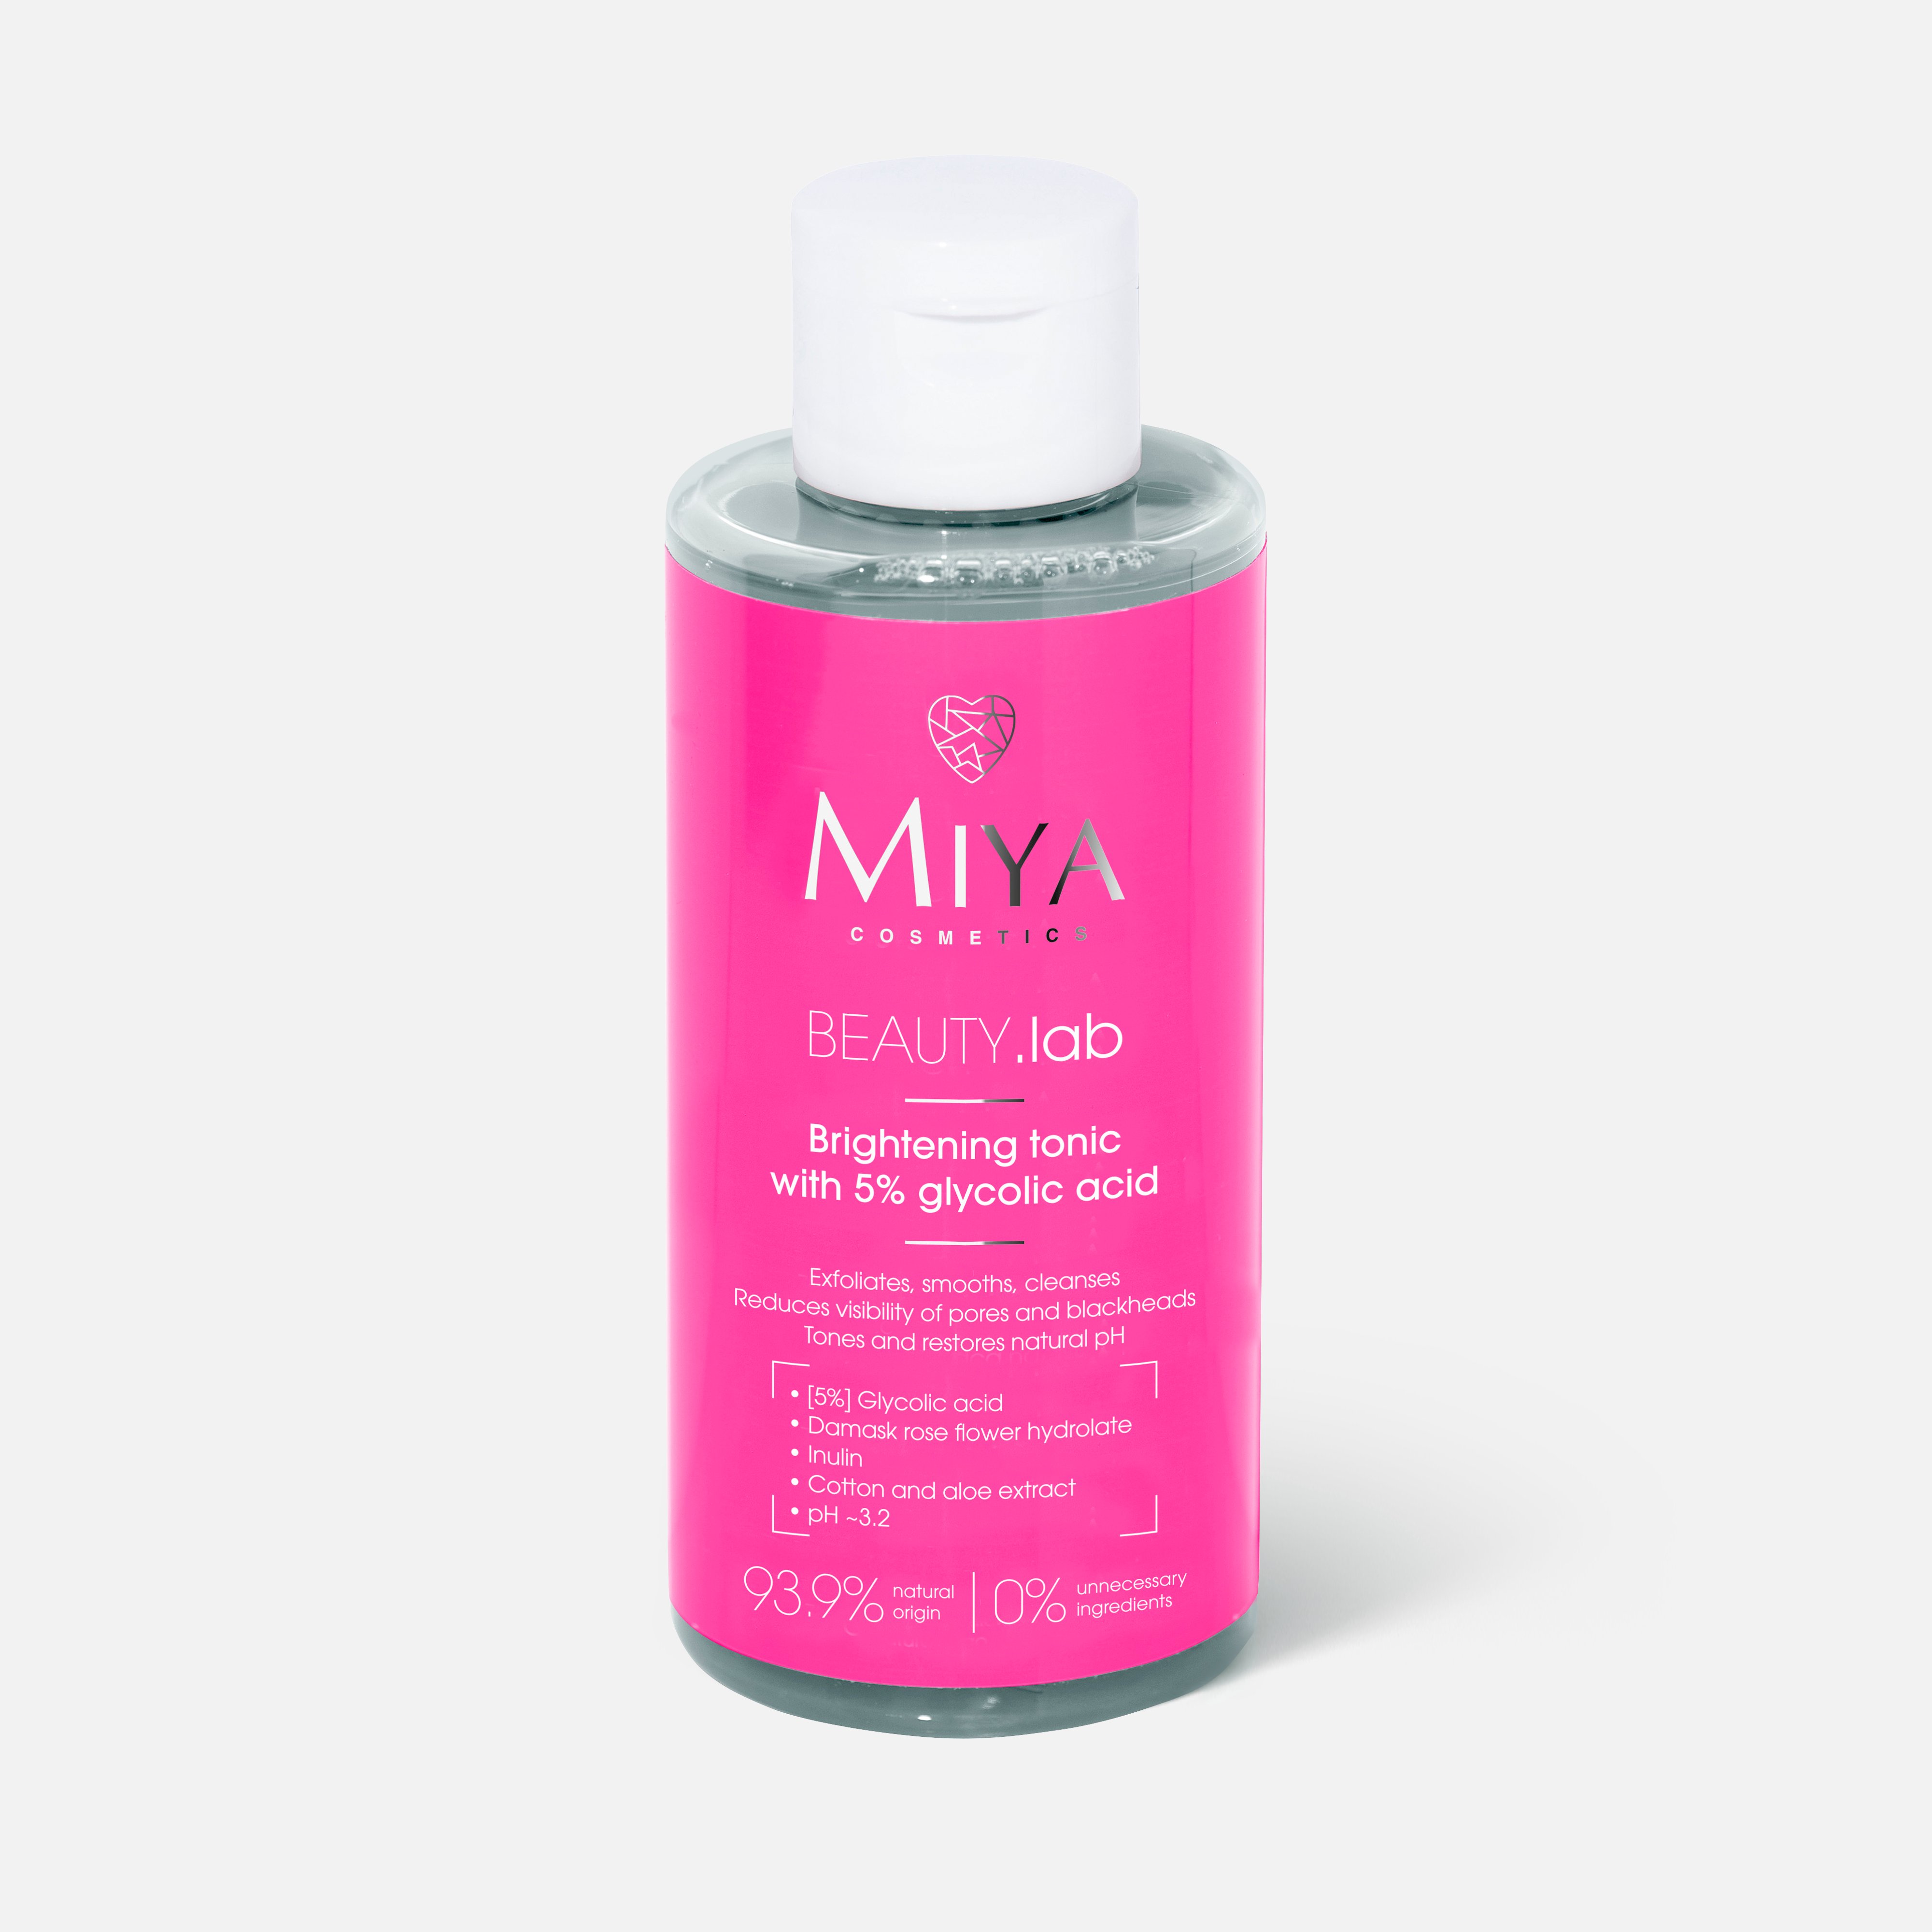 Тоник для лица Miya cosmetics Beauty.Lab Brightening, Glycolic acid 5%, 150 мл пилинг для лица sm7 aha pha кислотный пилинг гликолевая кислота 10%